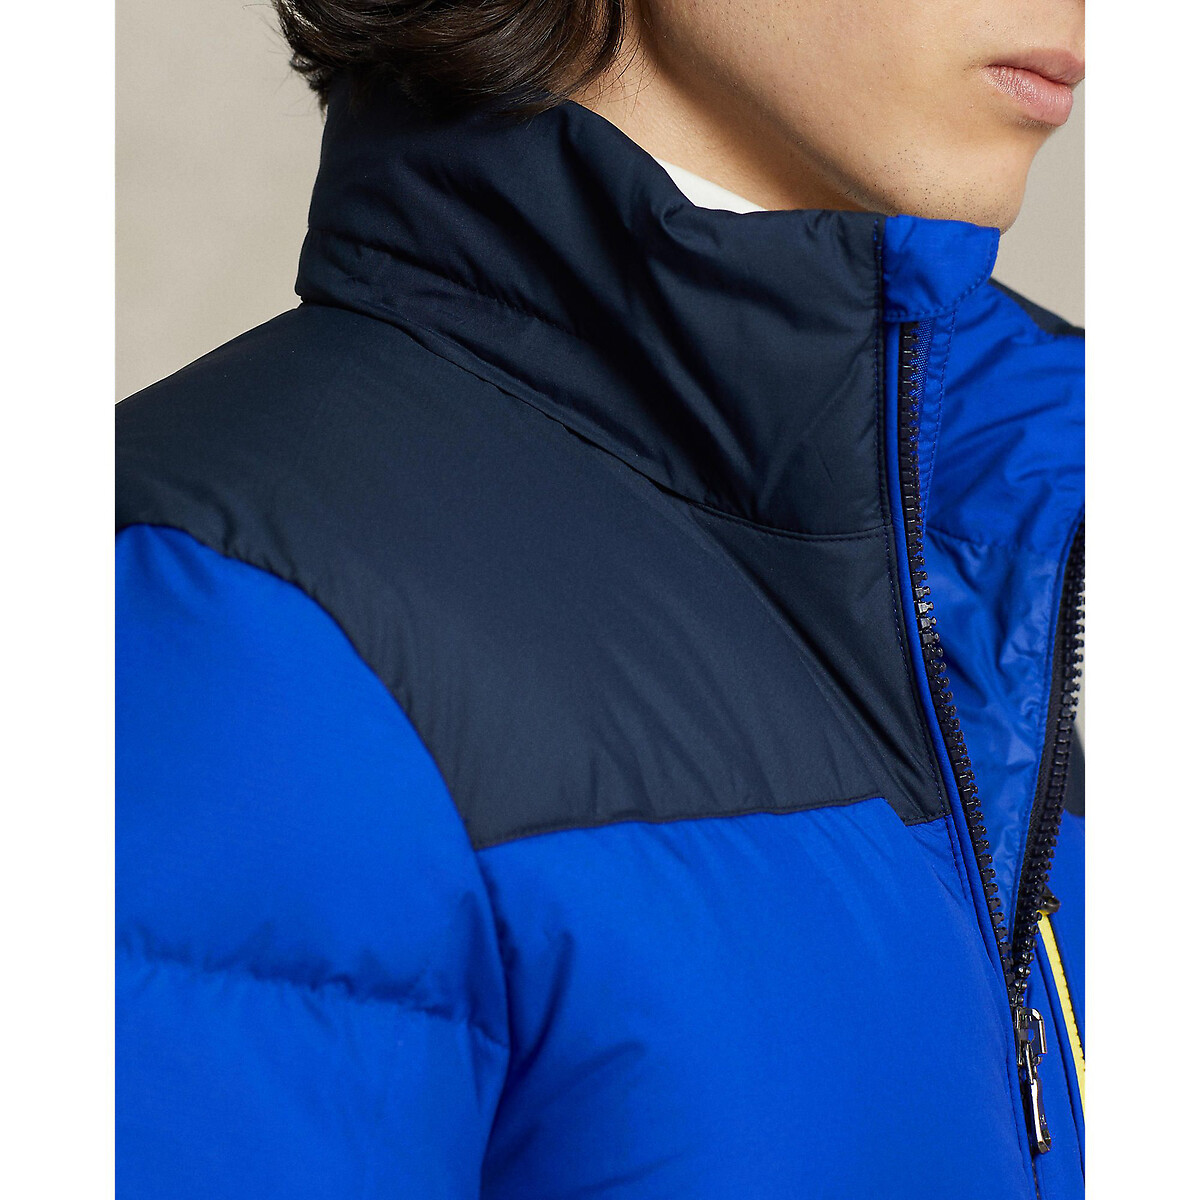 Куртка стеганая двухцветная со съемным капюшоном  S синий LaRedoute, размер S - фото 3